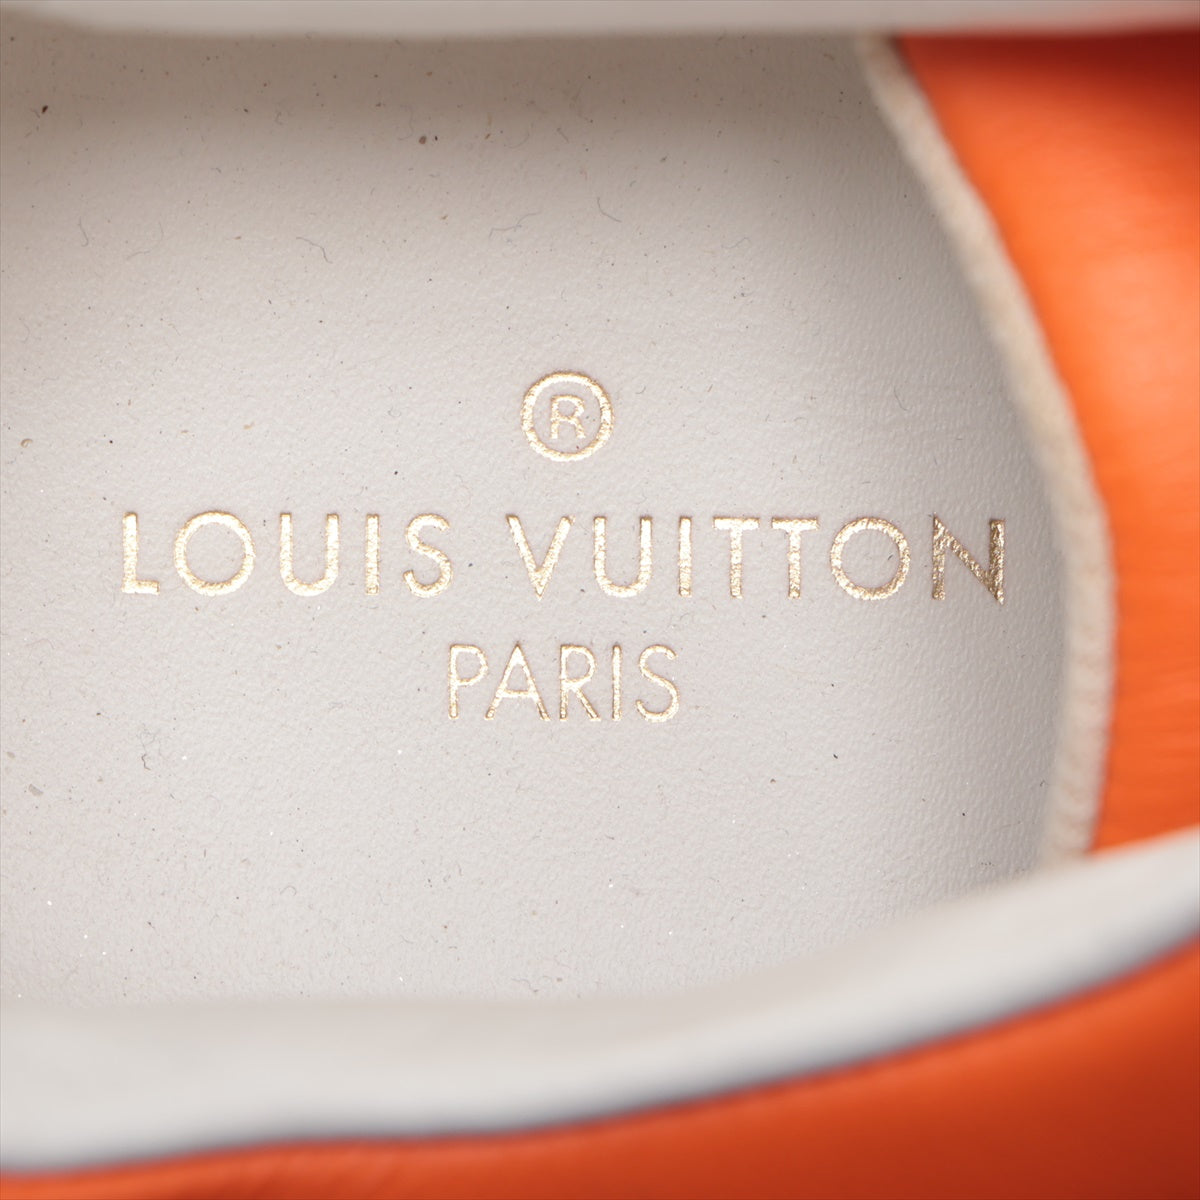 ルイヴィトン ルクセンブルグライン 20年 レザー スニーカー 6 メンズ ホワイト×オレンジ LD0260 ダミエ